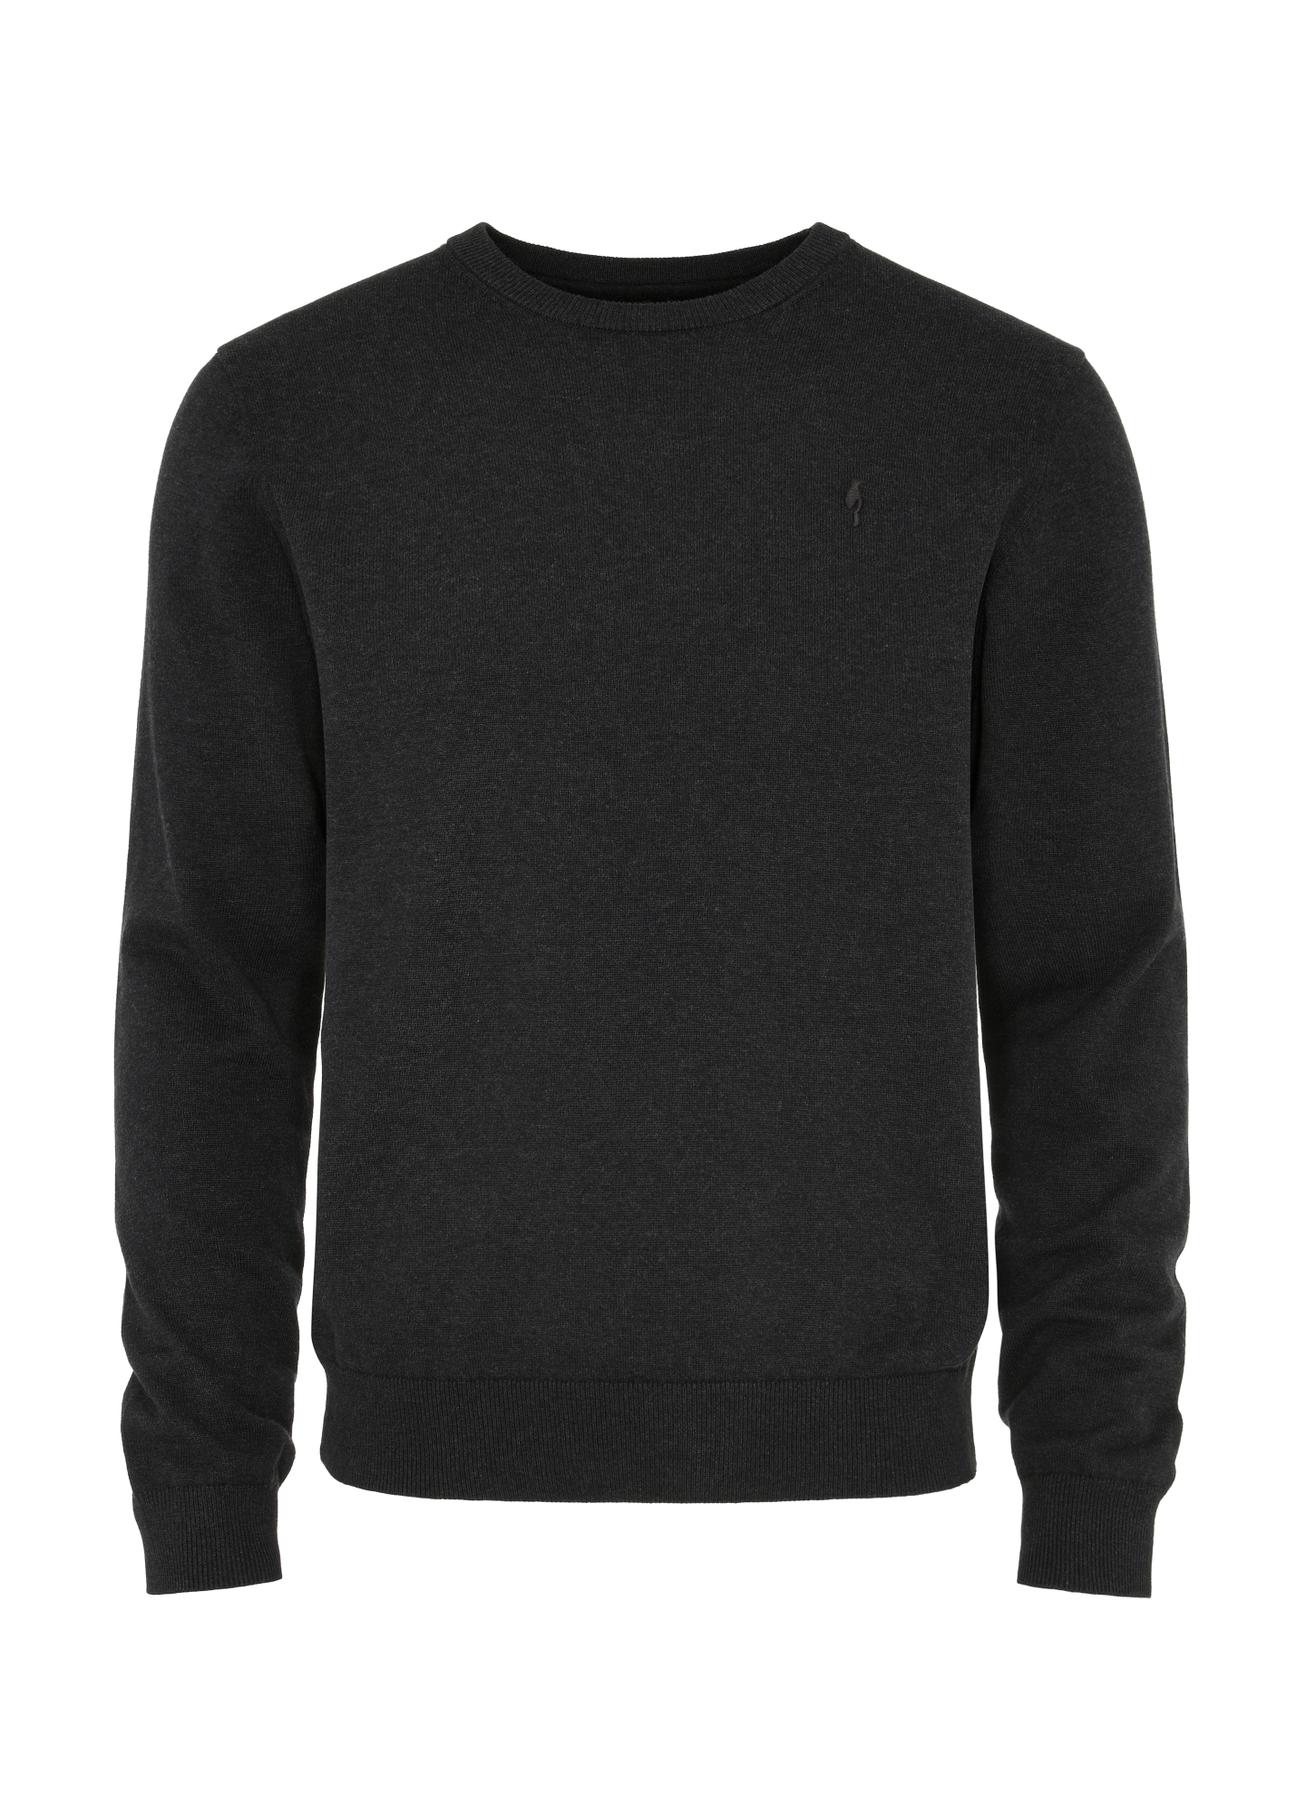 Grafitowy bawełniany sweter męski SWEMT-0143-95(W24)